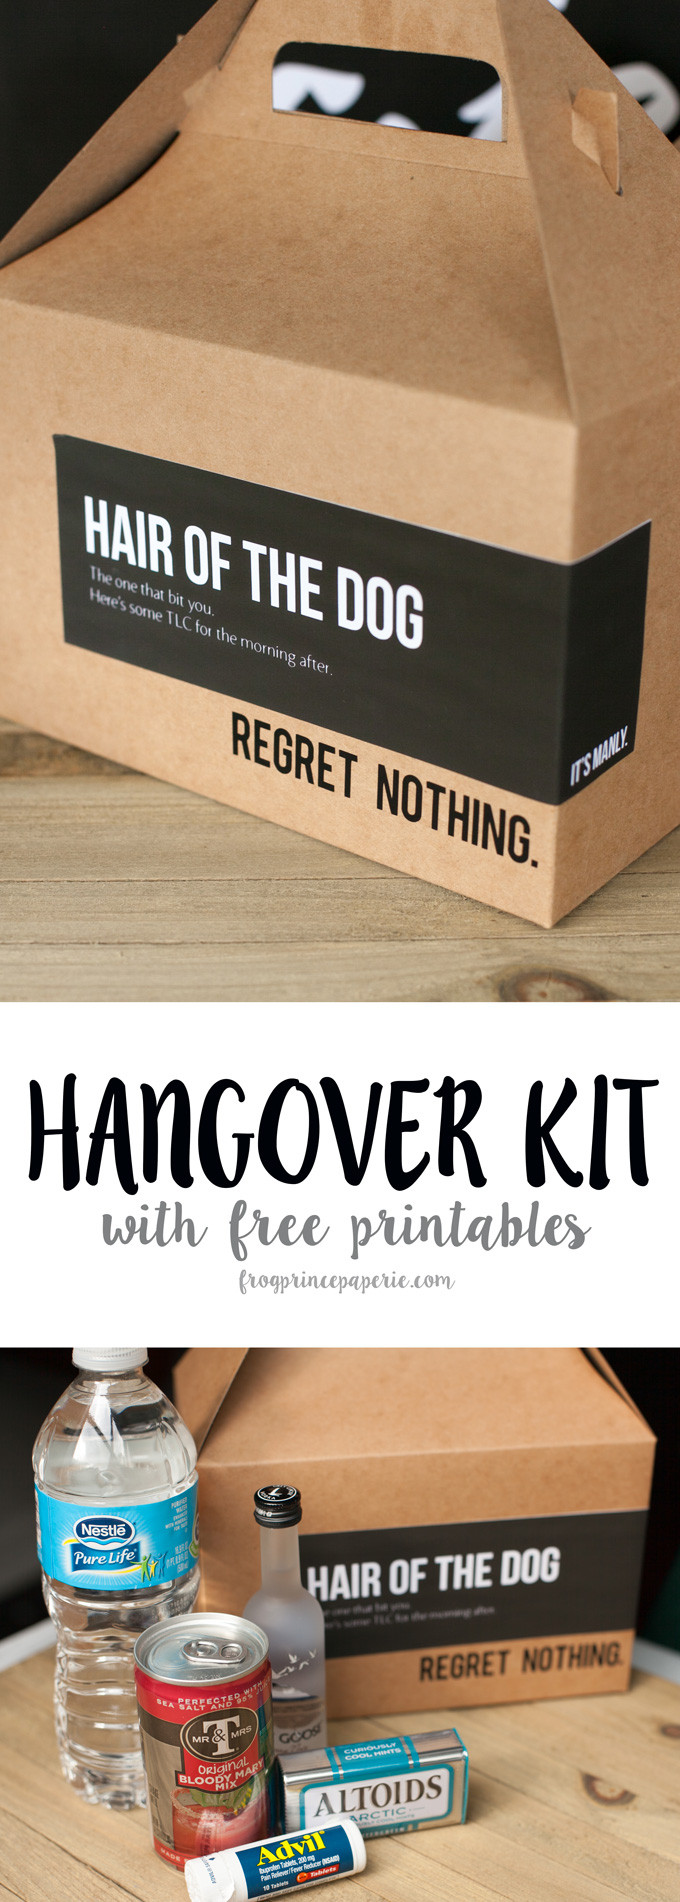 DIY Hangover Kit
 DIY Hangover Kit Frog Prince Paperie